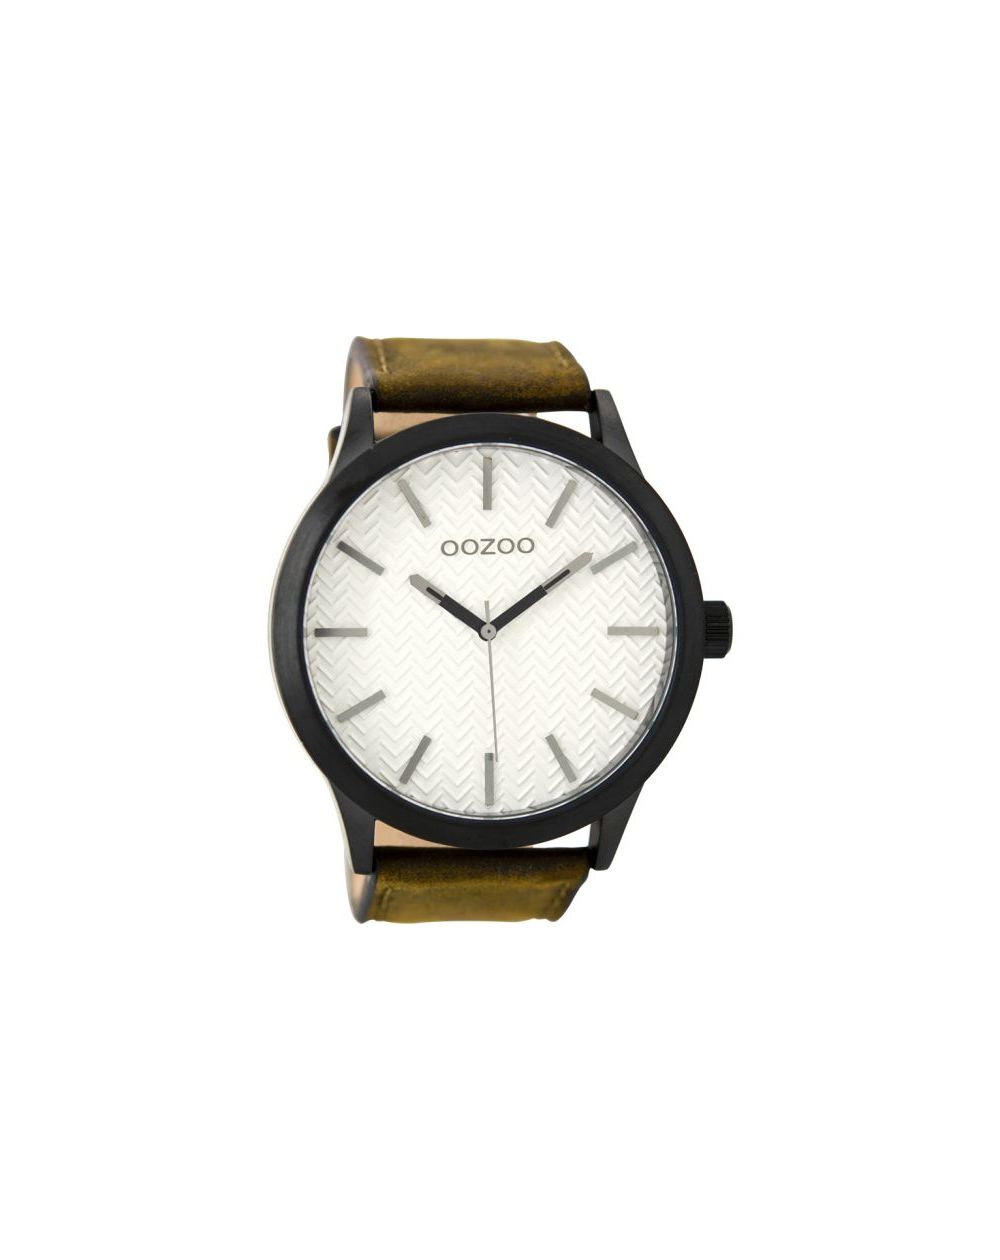 Oozoo montre/watch/horloge C9011